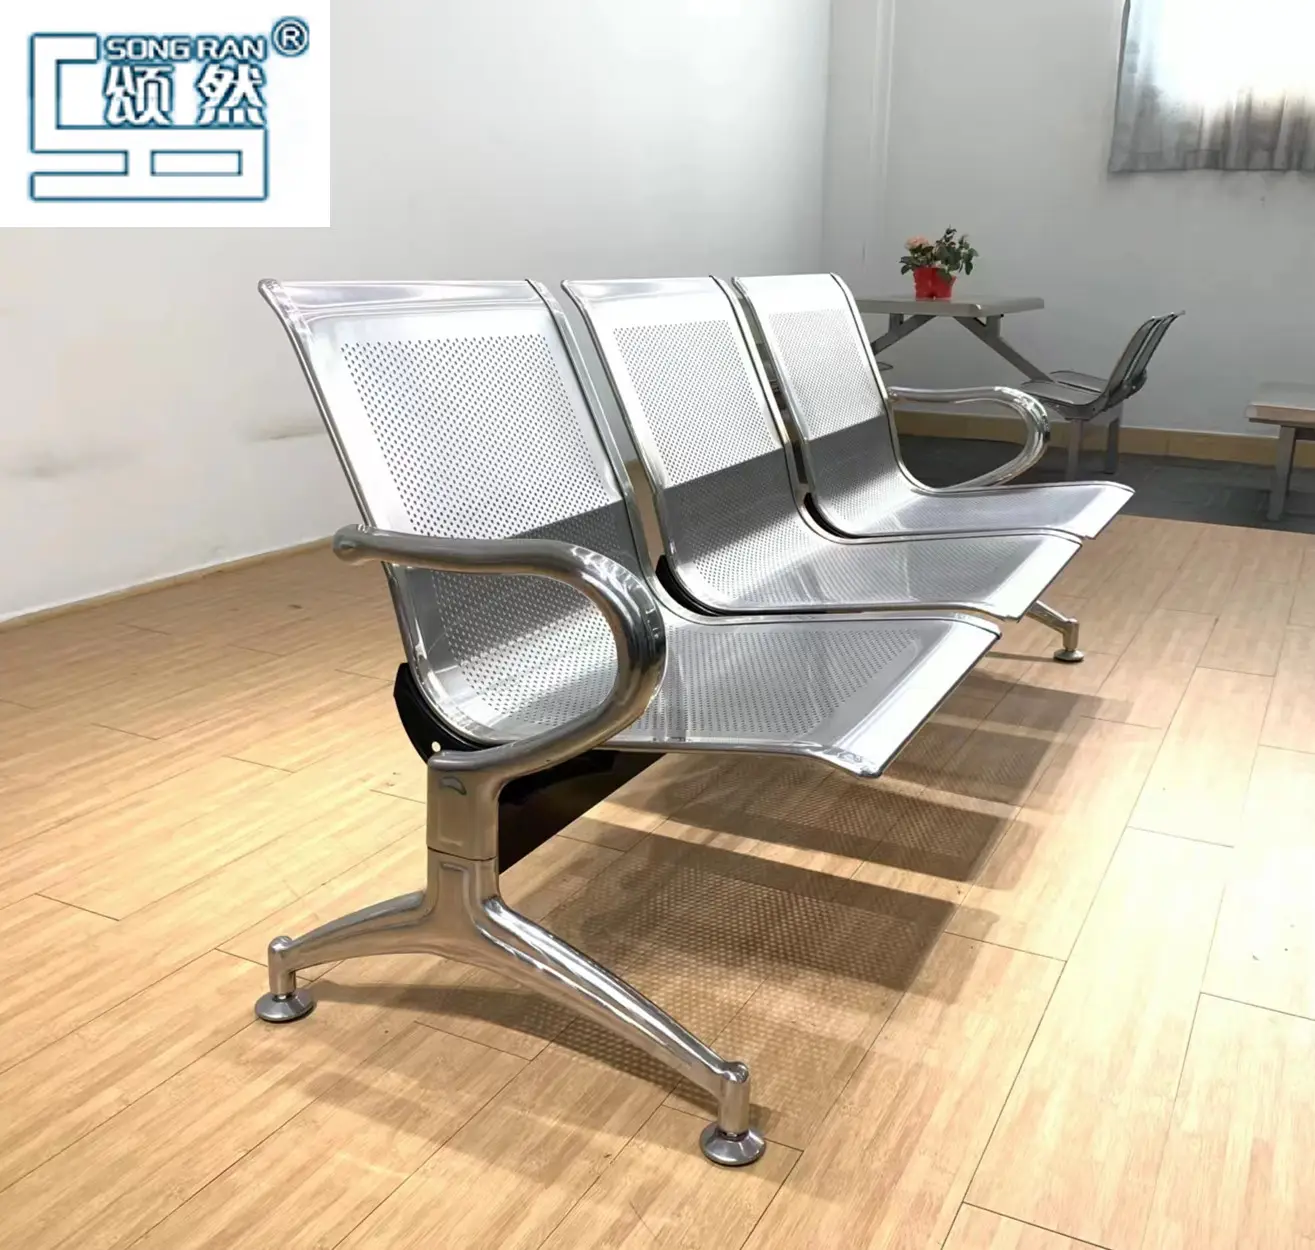 Asiento de acero inoxidable para 3 personas, adecuado para sillas de espera en hospitales, clínicas y talleres de mascotas